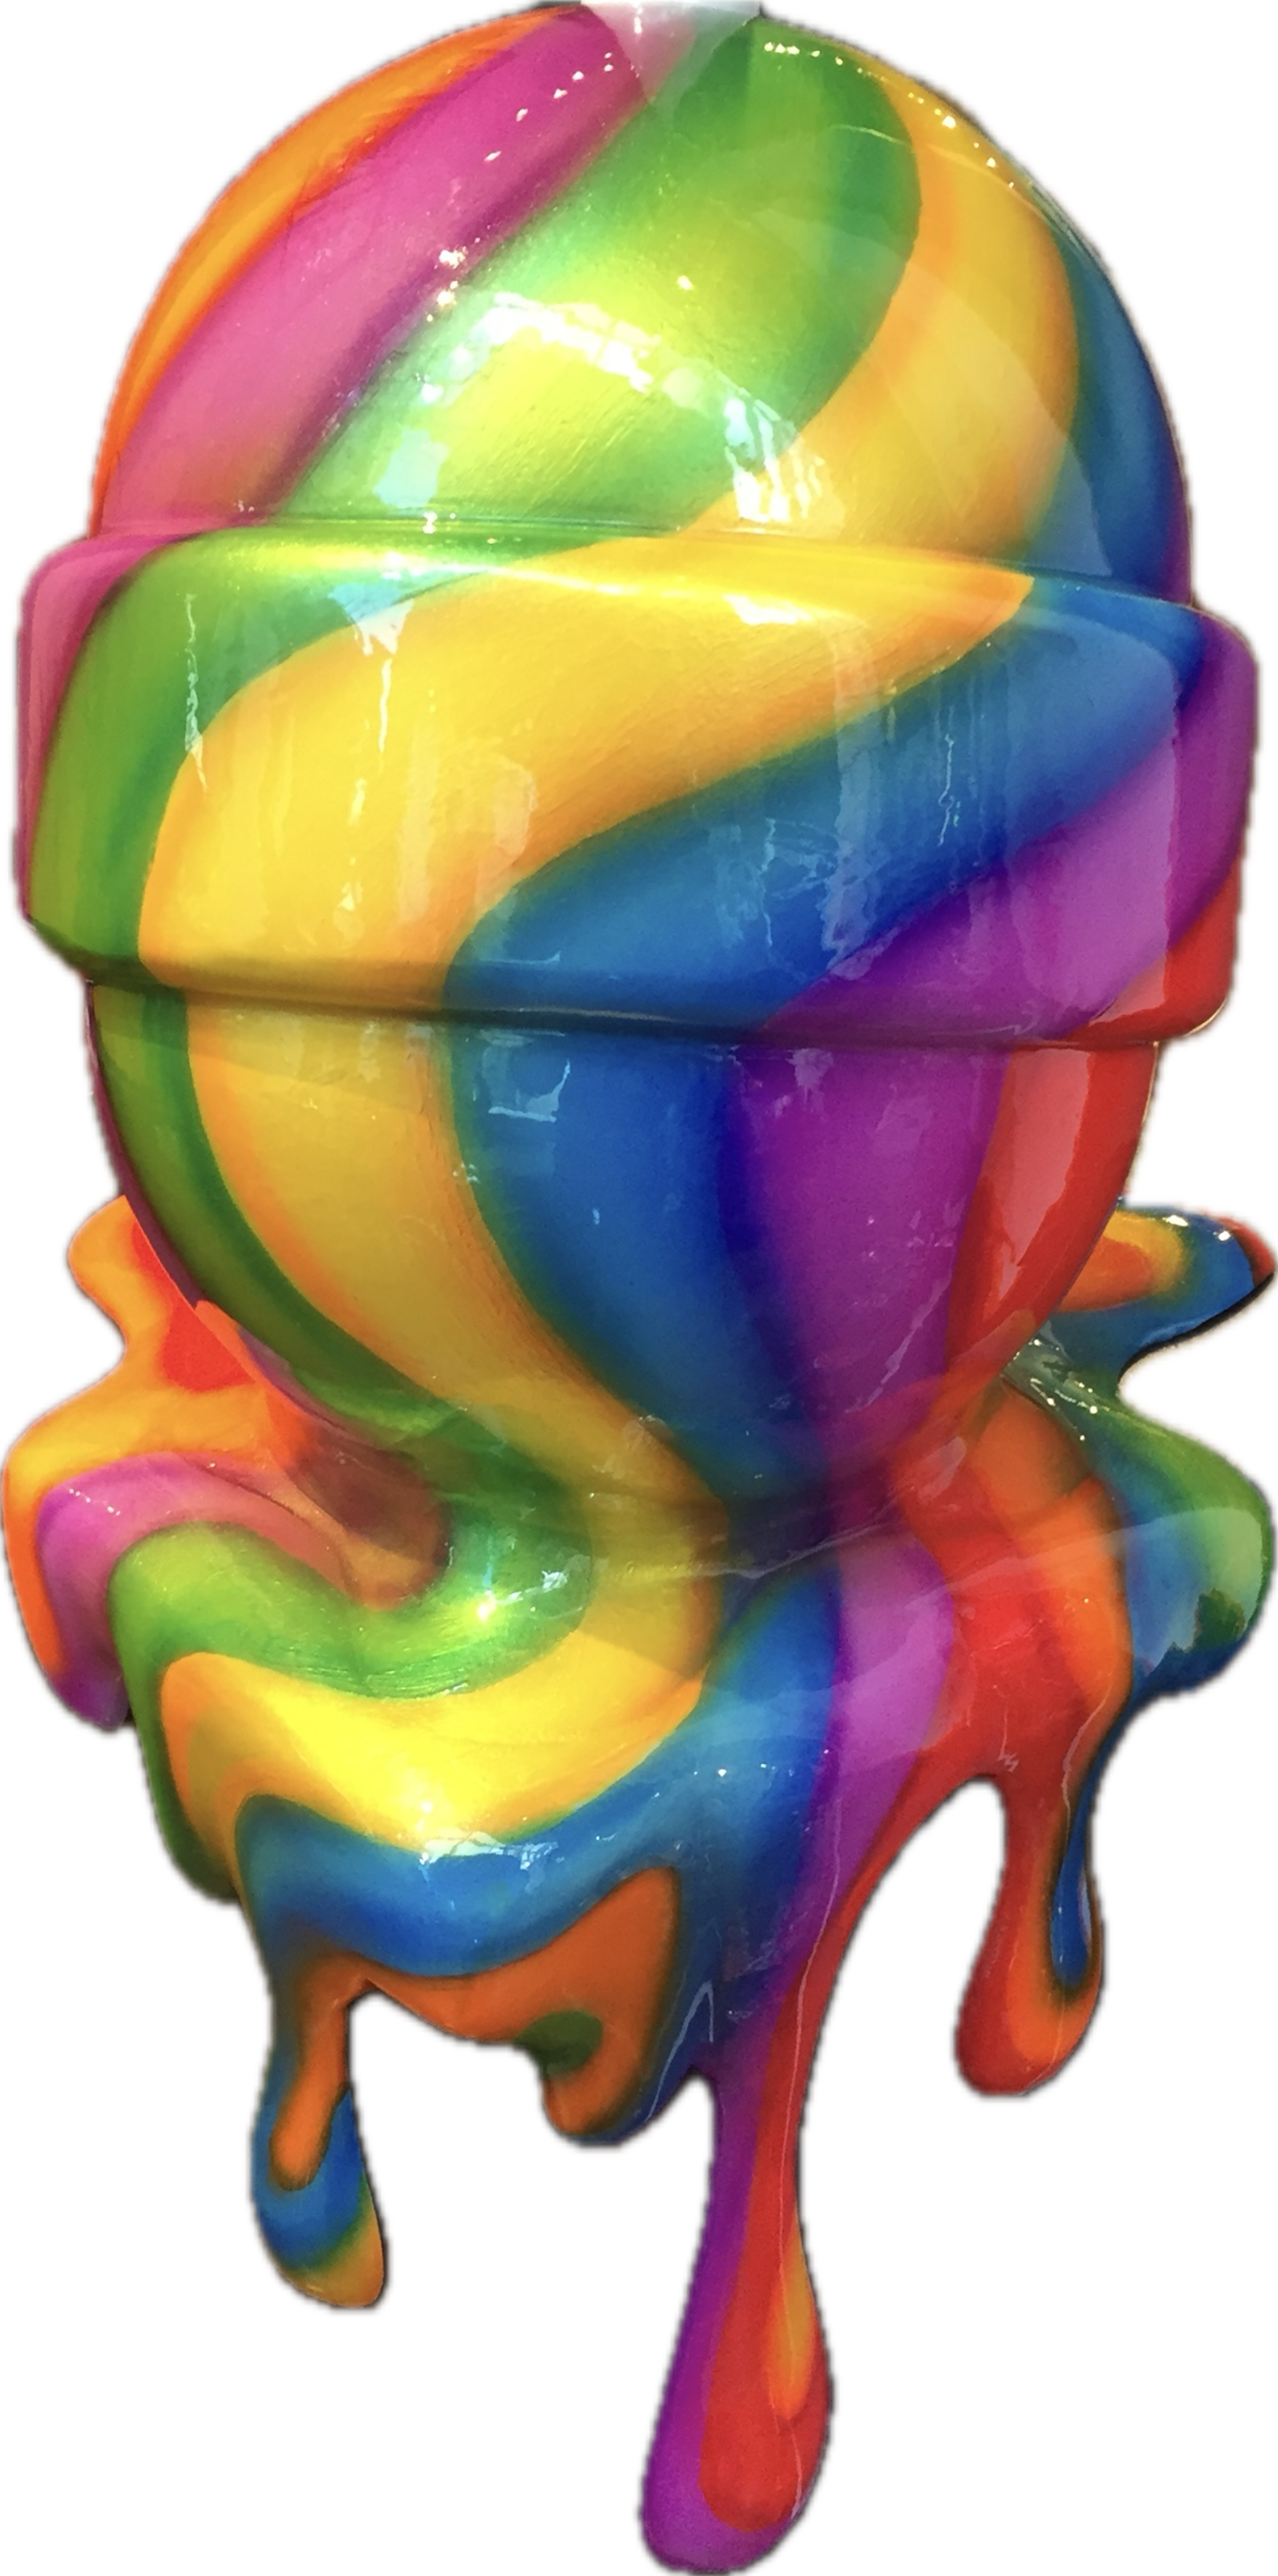 "Rainbow" Vertical Lollipop by Lollipops by Elena Bulatova